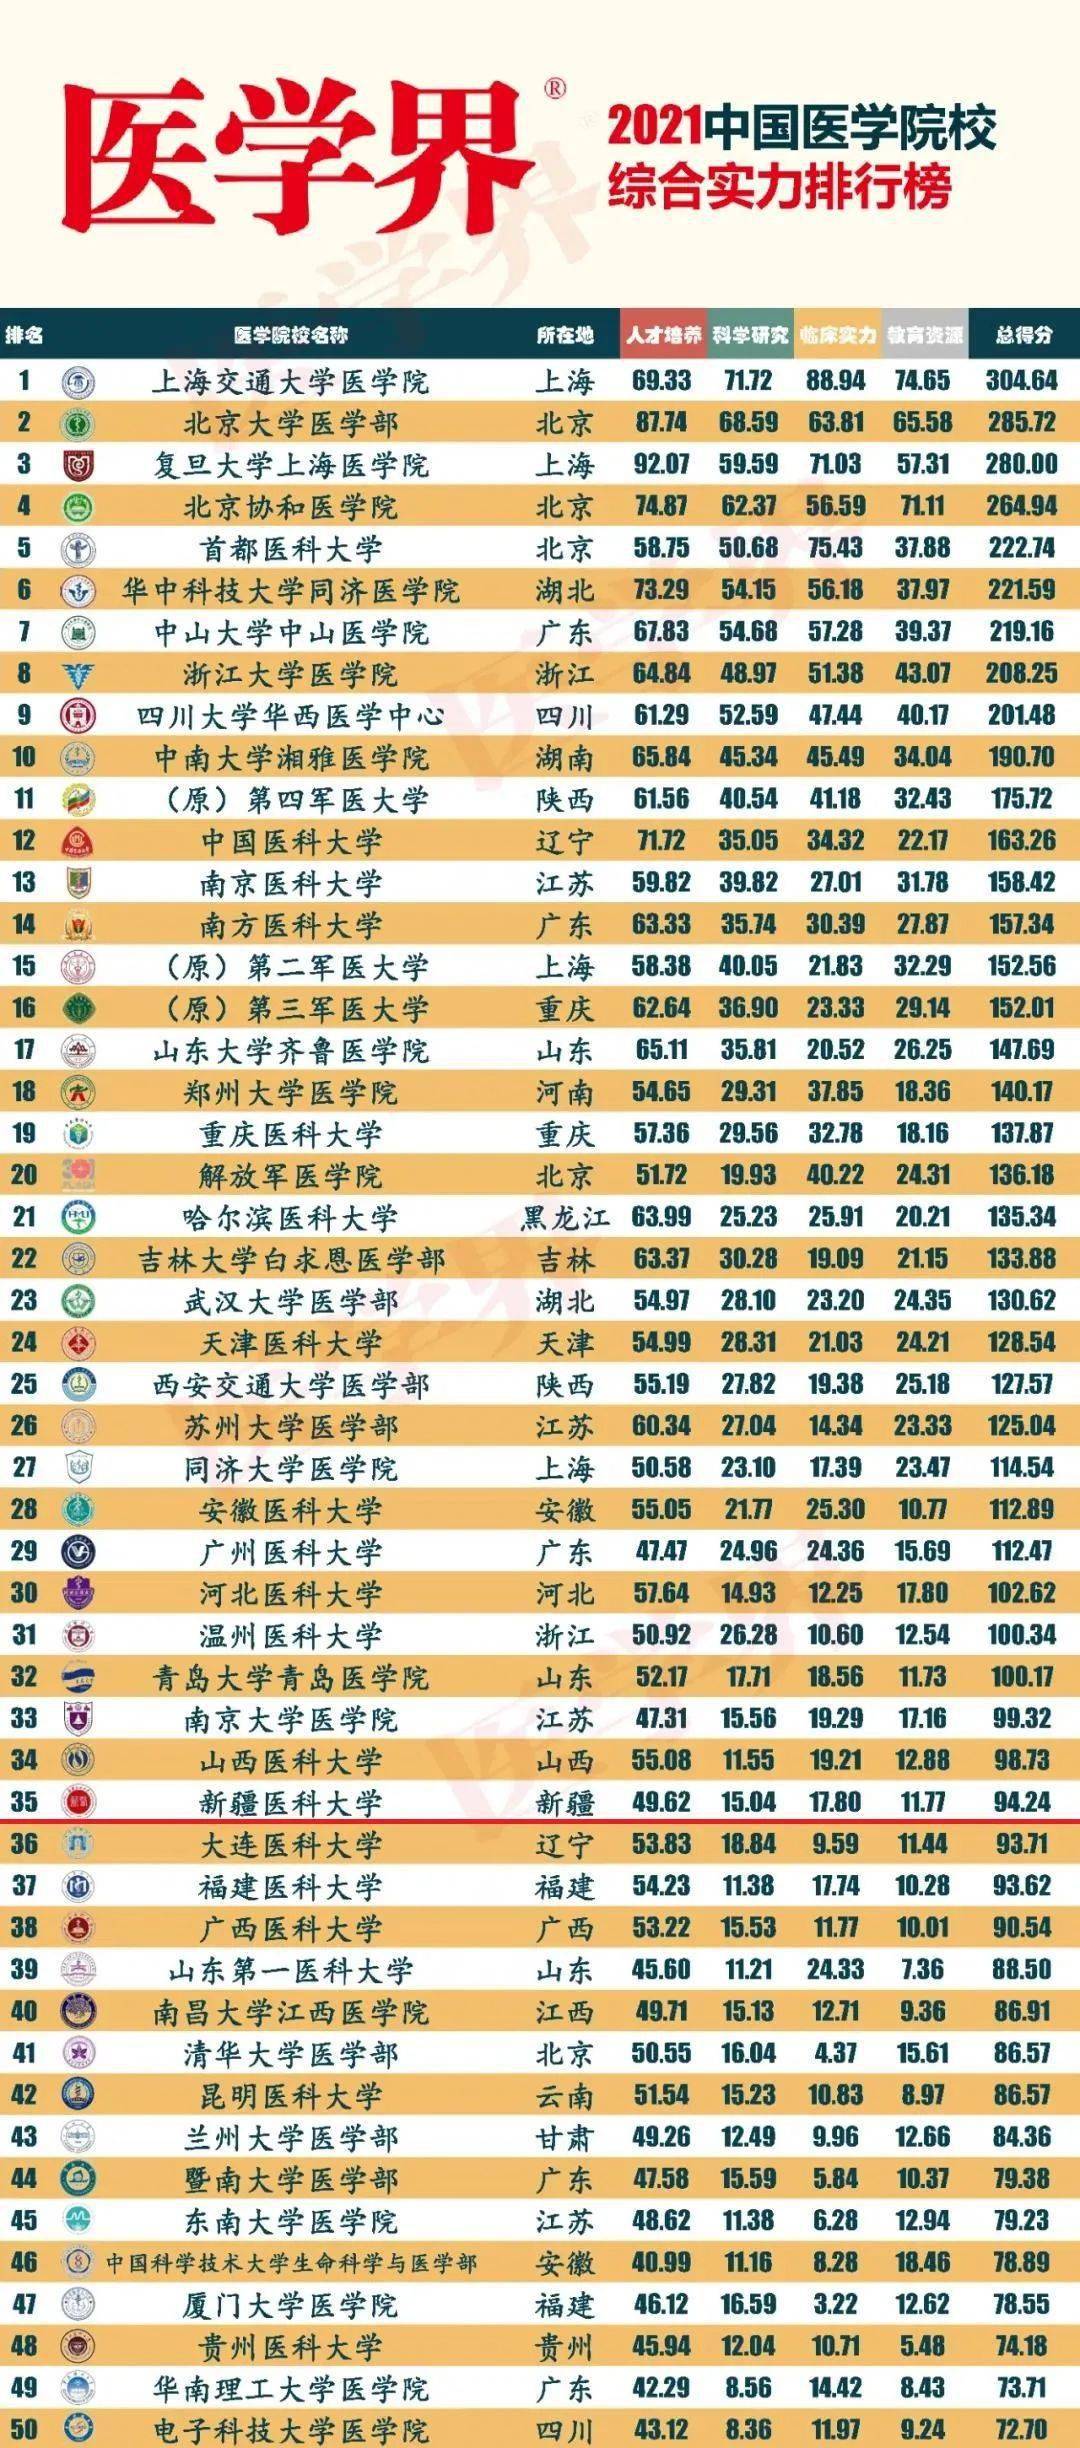 2021中国医学院校综合实力排行榜》出炉,新疆医科大学位列全国第35位!